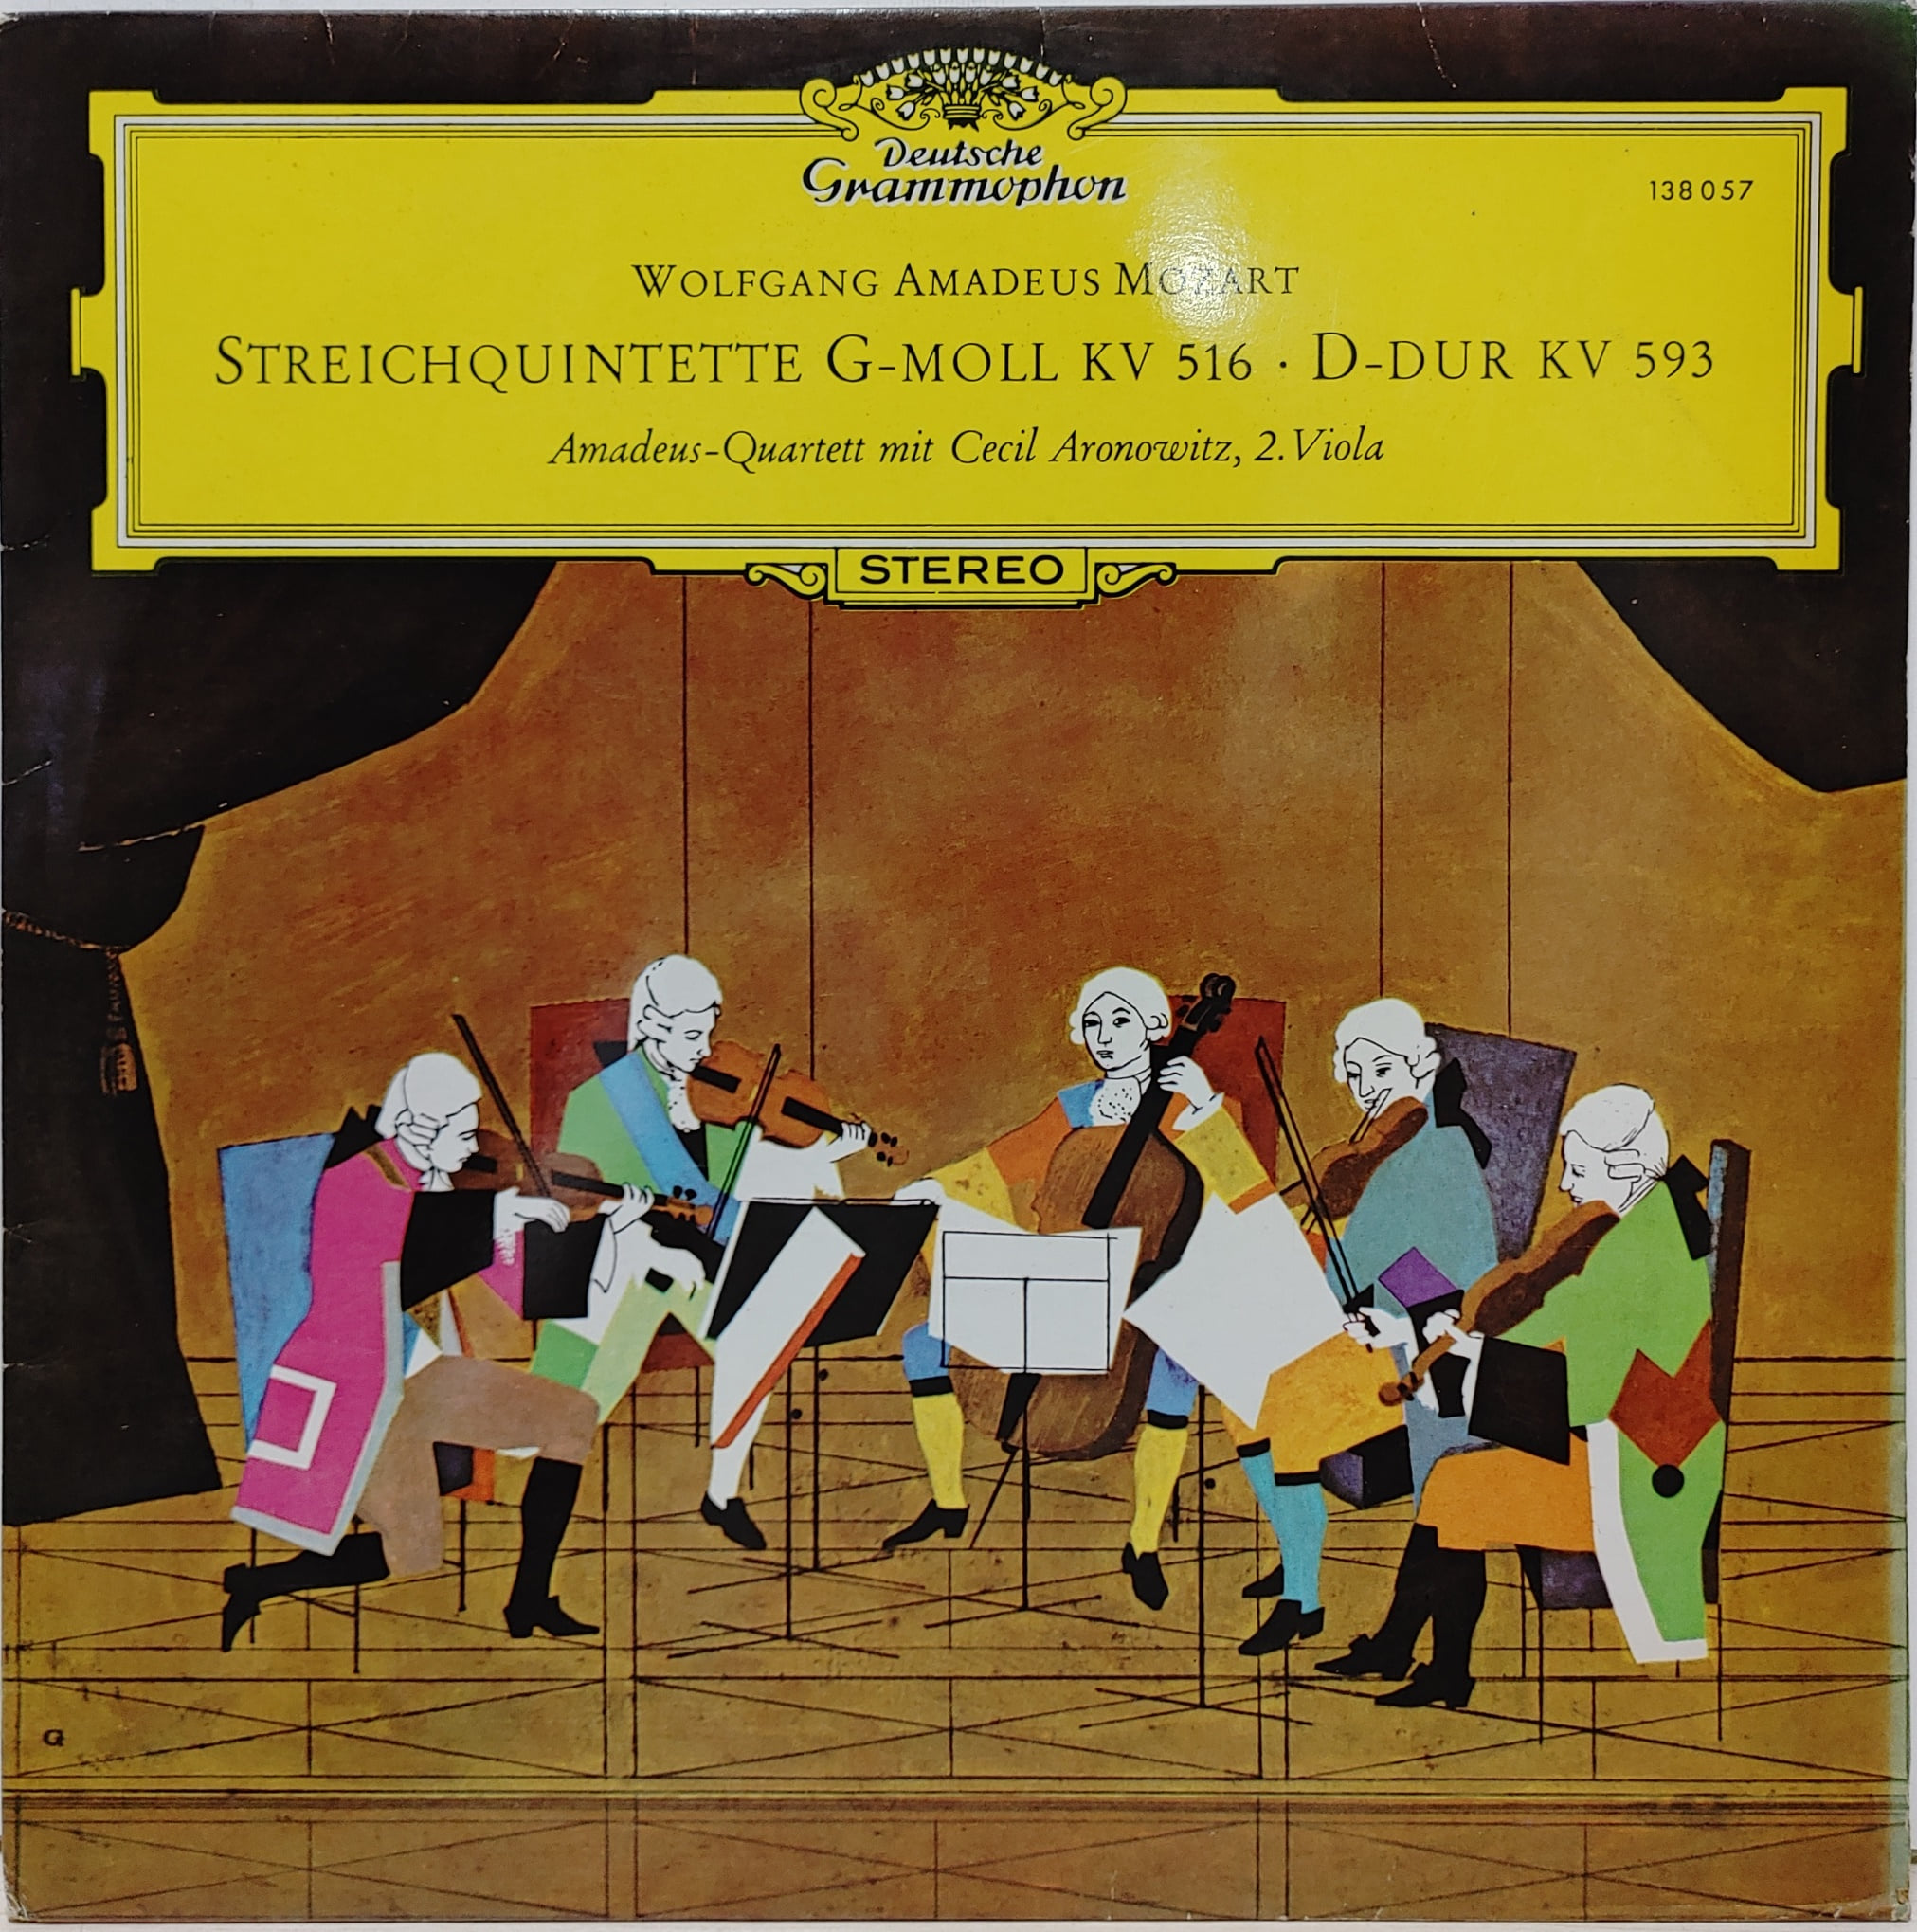 Mozart / Streichquintette G-moll KV 516 D-dur KV 593 Amadeus Quartet